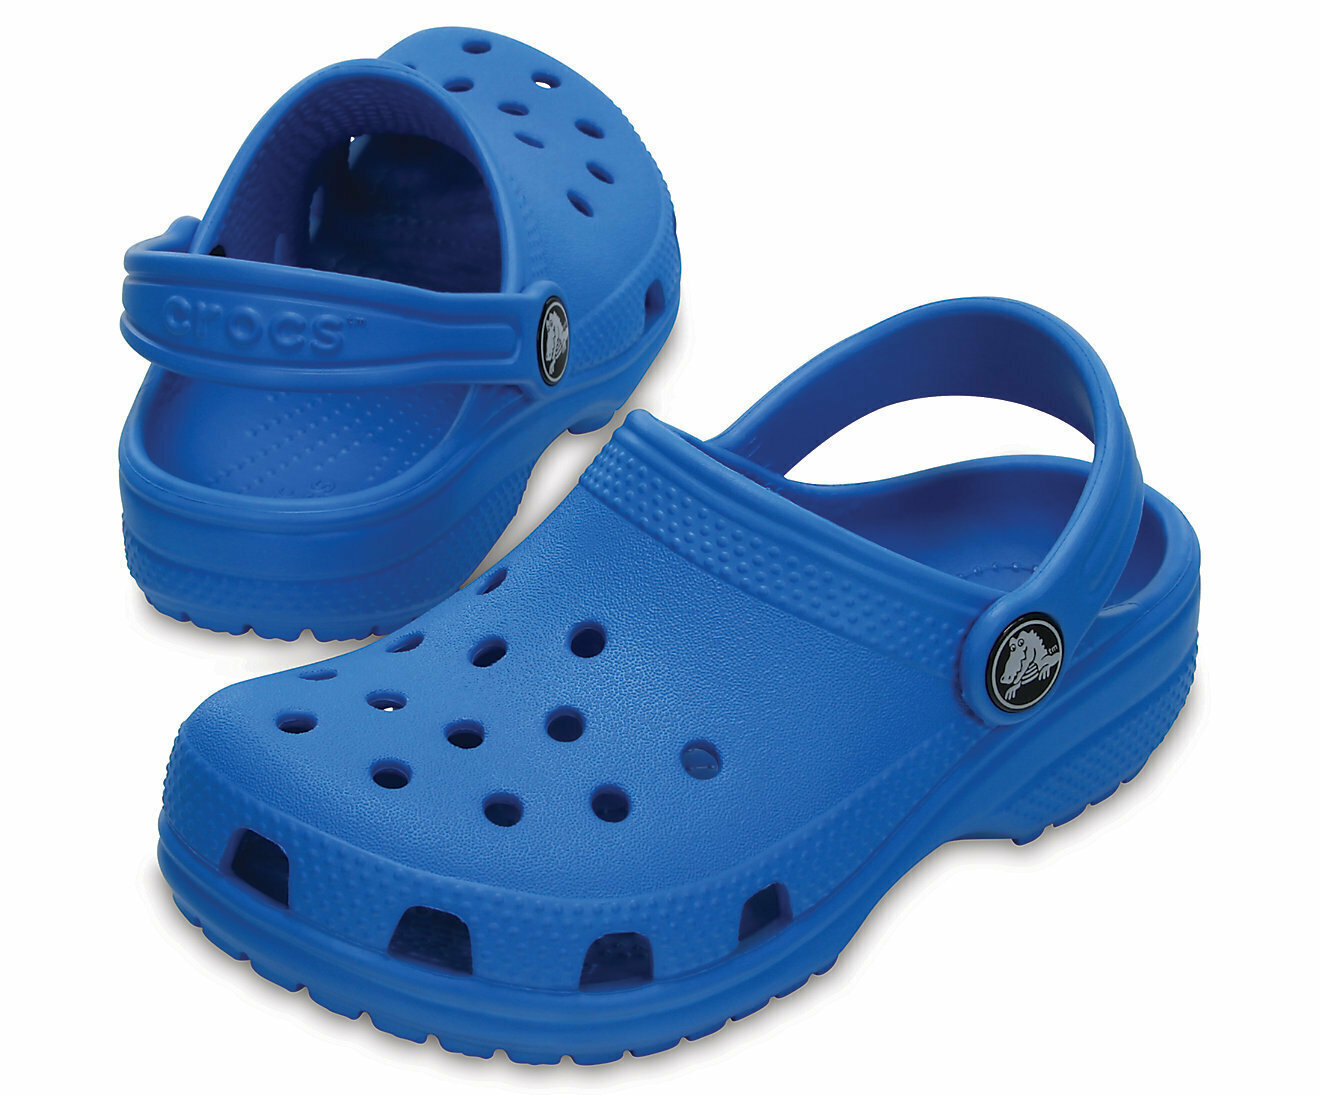 Crocs Classic Kids Clog Children's Shoes Sandals - Ocean Blue